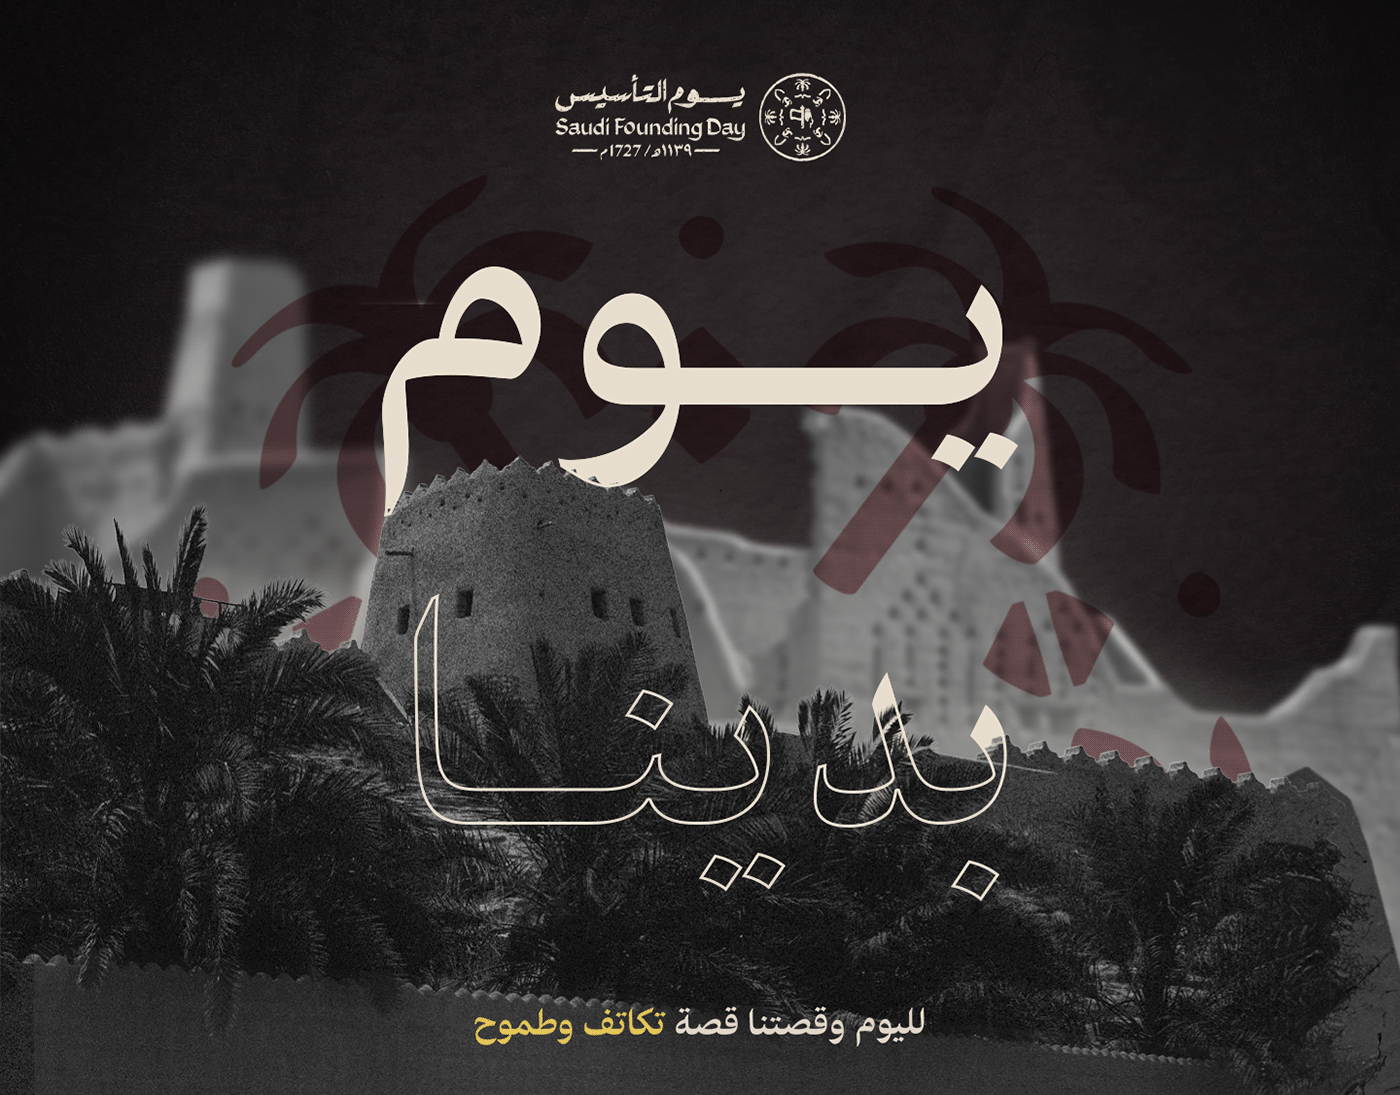 motion graphics  2D Animation Social media post يوم التأسيس السعودي Saudi Arabia سوشيال ميديا الرياض السعودية Founding Day